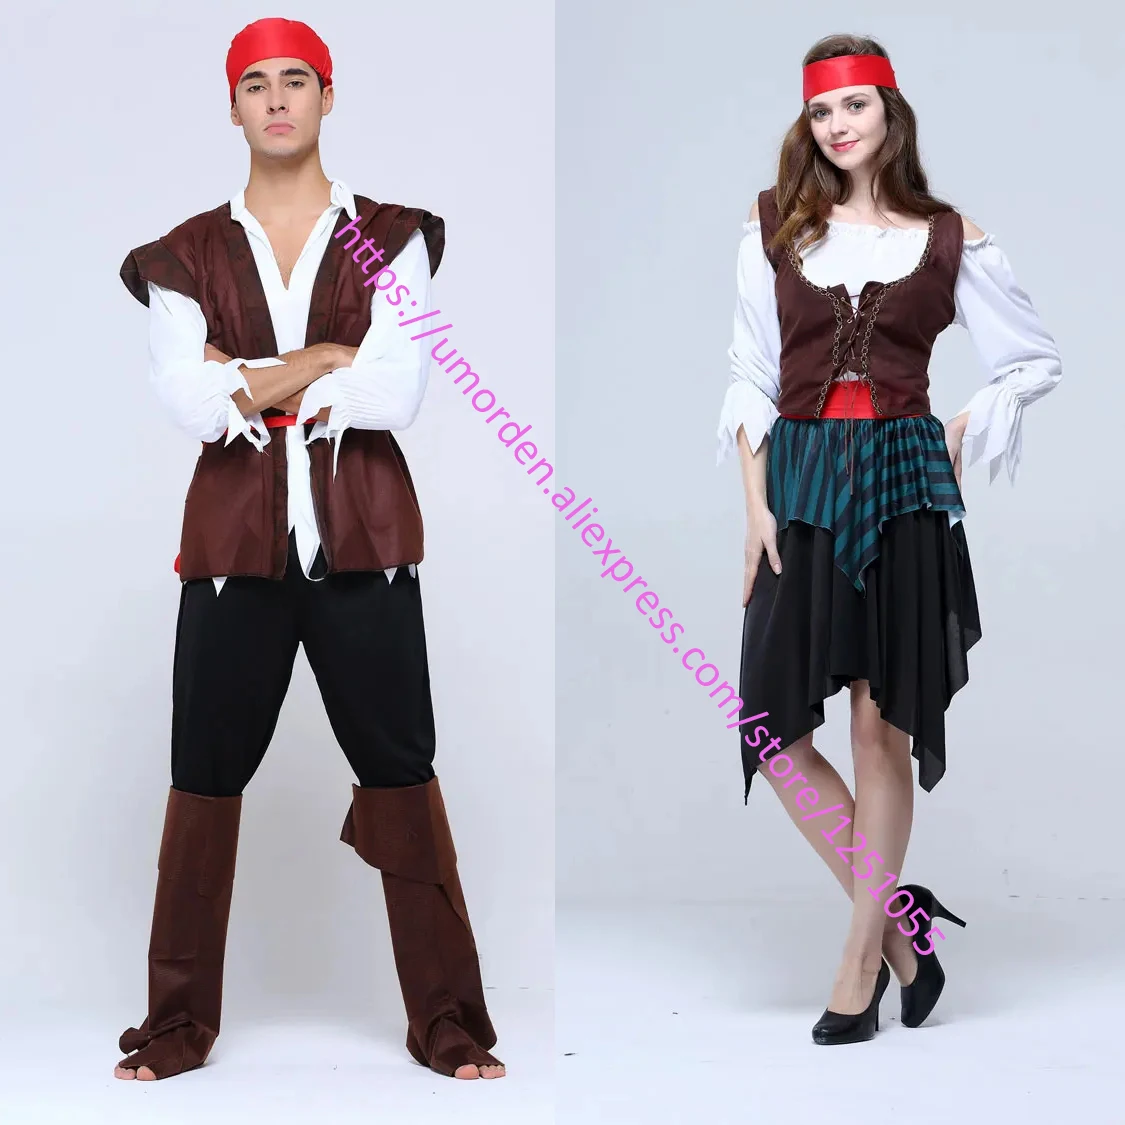 Umorden Halloween Karneval Party Kapitän Pirate Kostüme Erwachsene Phantasie Kleid Cosplay für Frauen Männer Paare